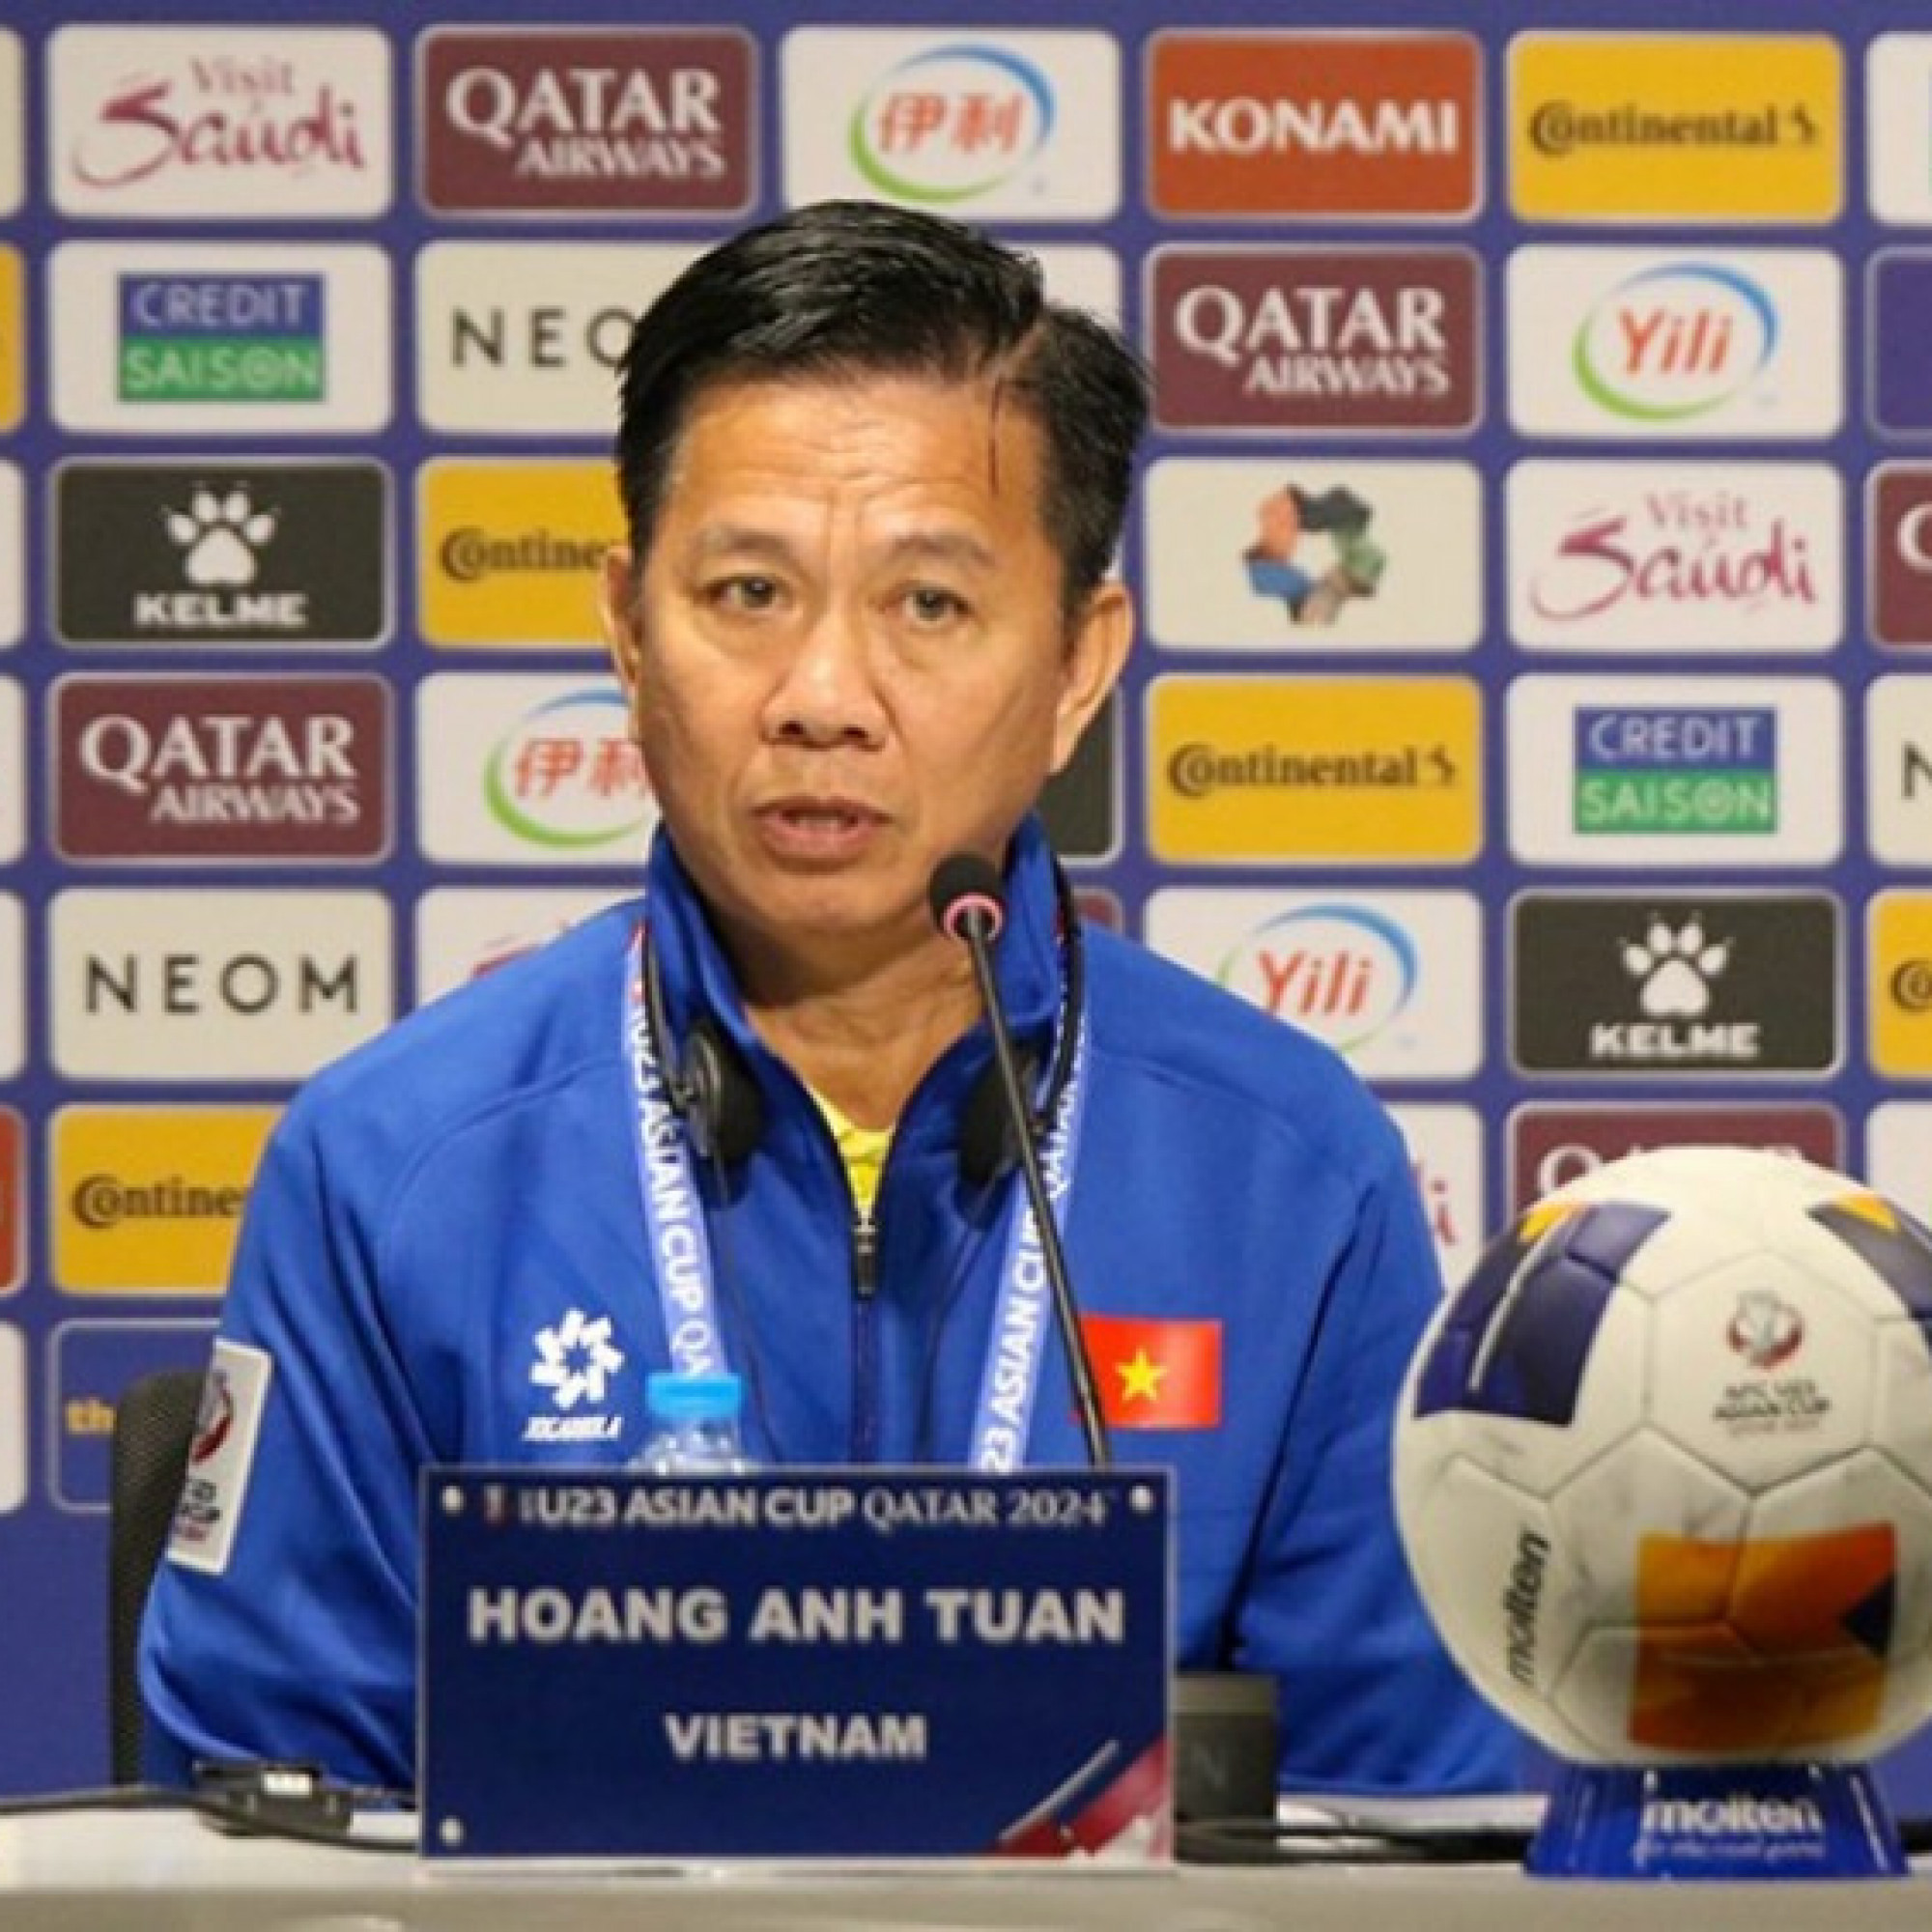  - Trực tiếp họp báo U23 Việt Nam - U23 Kuwait: HLV Hoàng Anh Tuấn nói về chiến thắng đầu tay